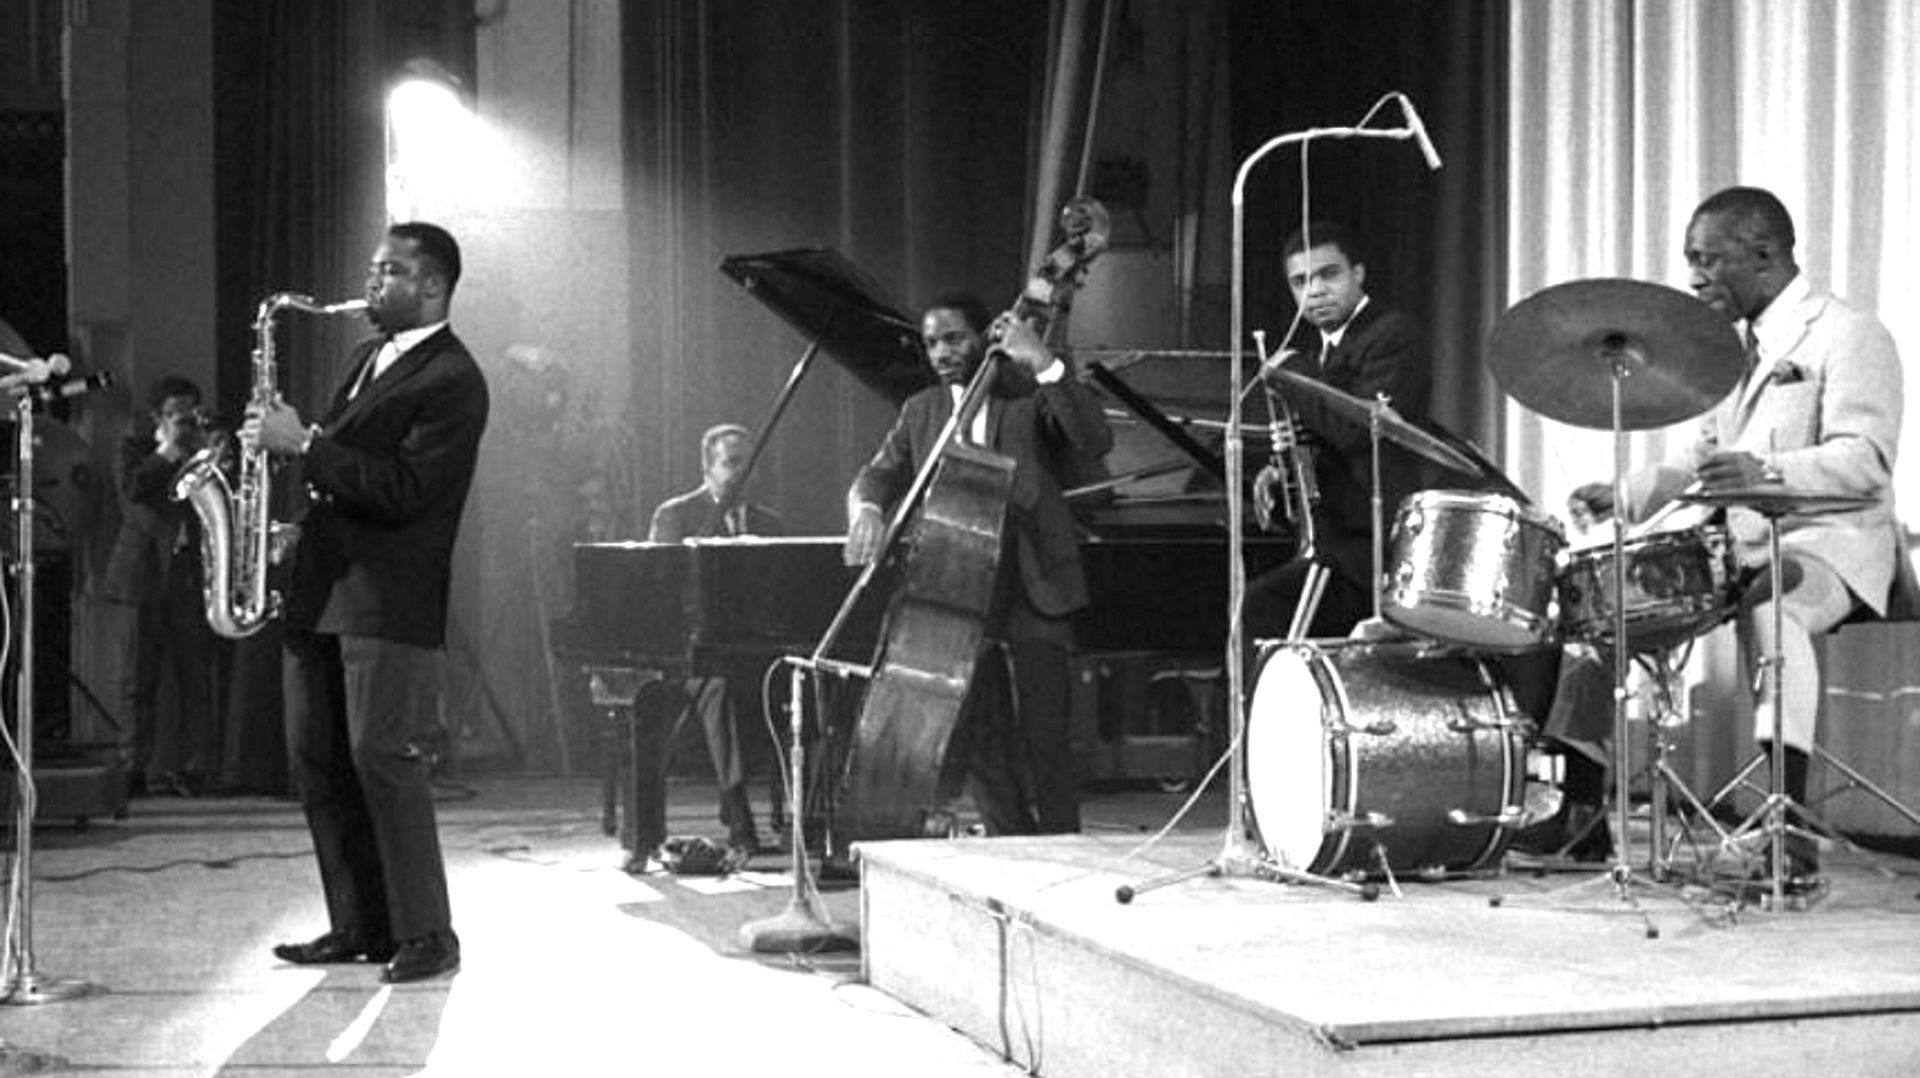 Art Blakey nous quittait il y a 30 ans, revivez son concert parisien de 1965